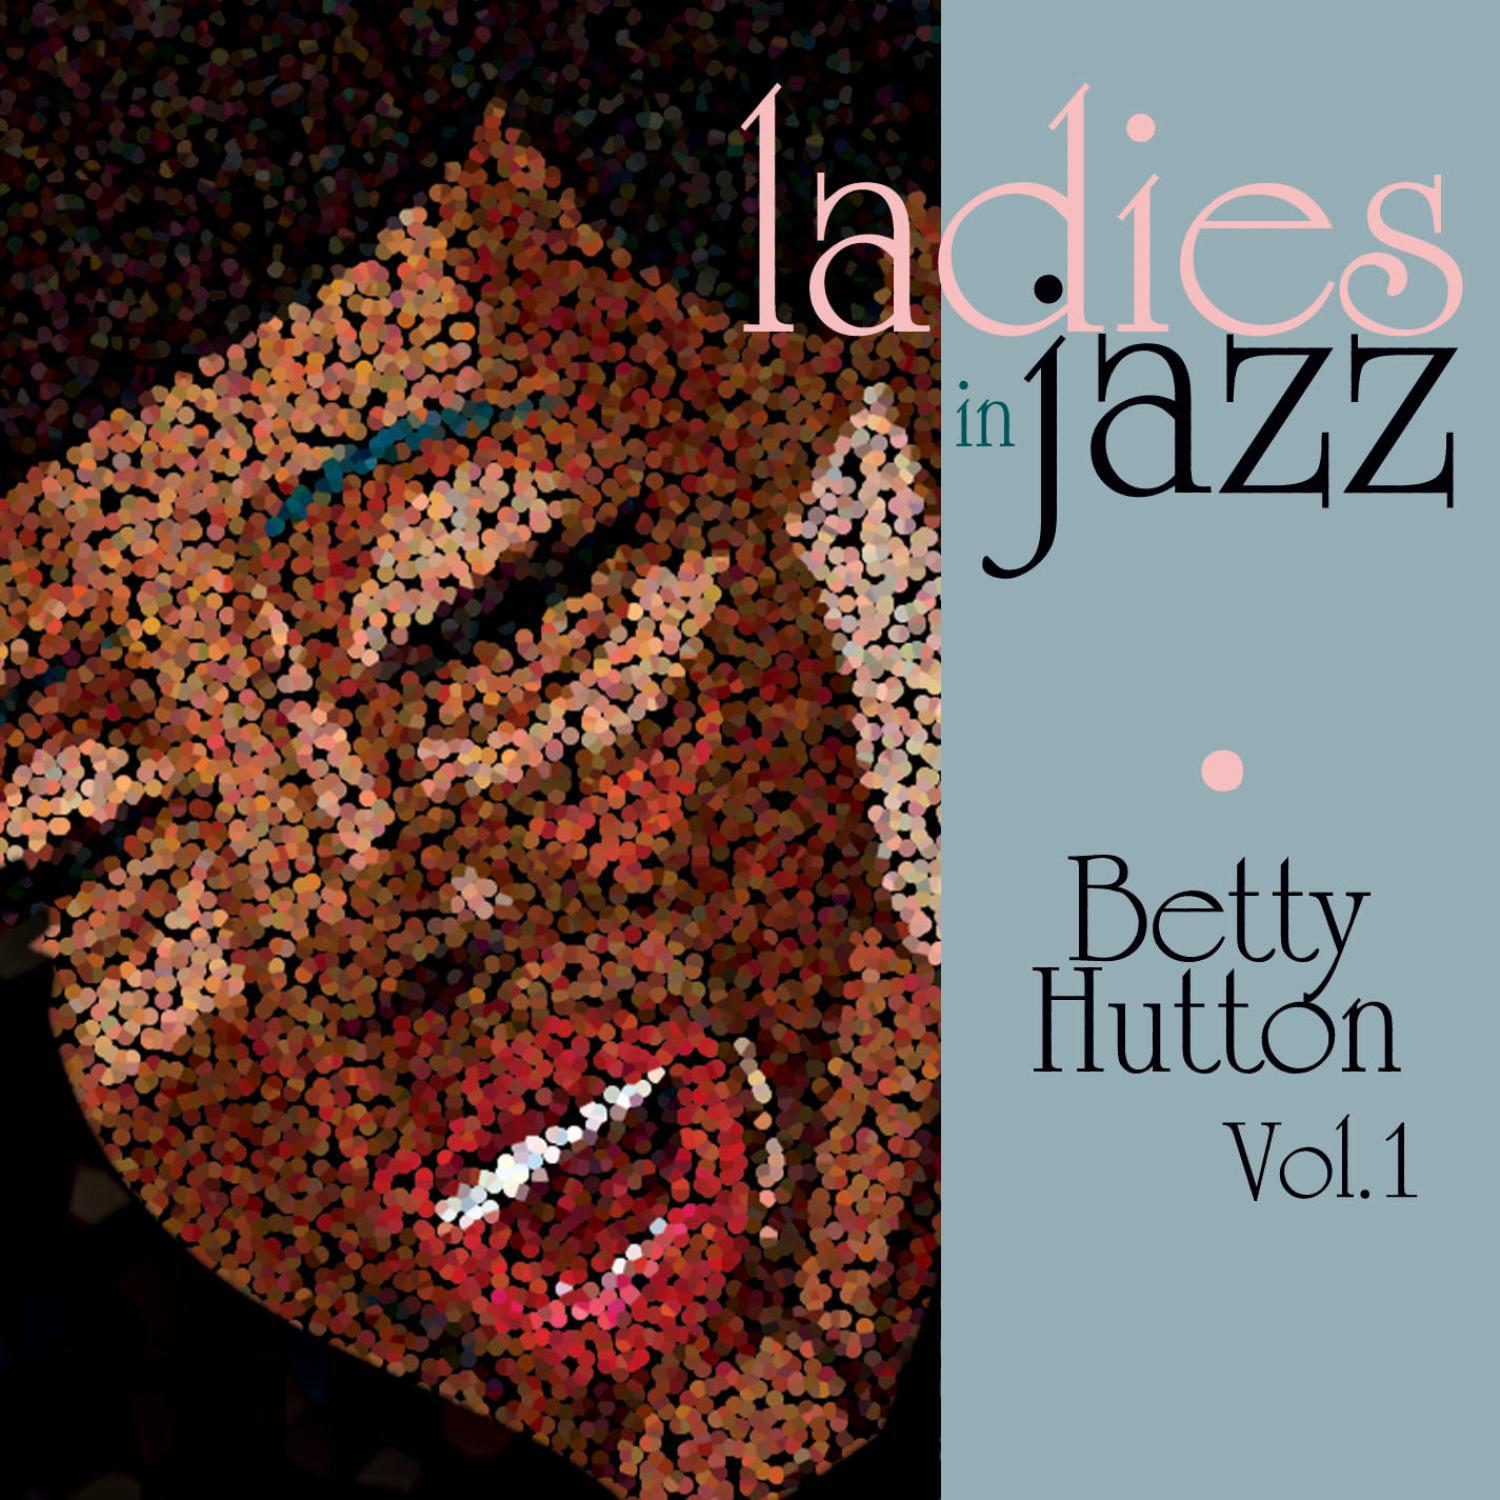 Ladies in Jazz - Betty Hutton Vol. 1